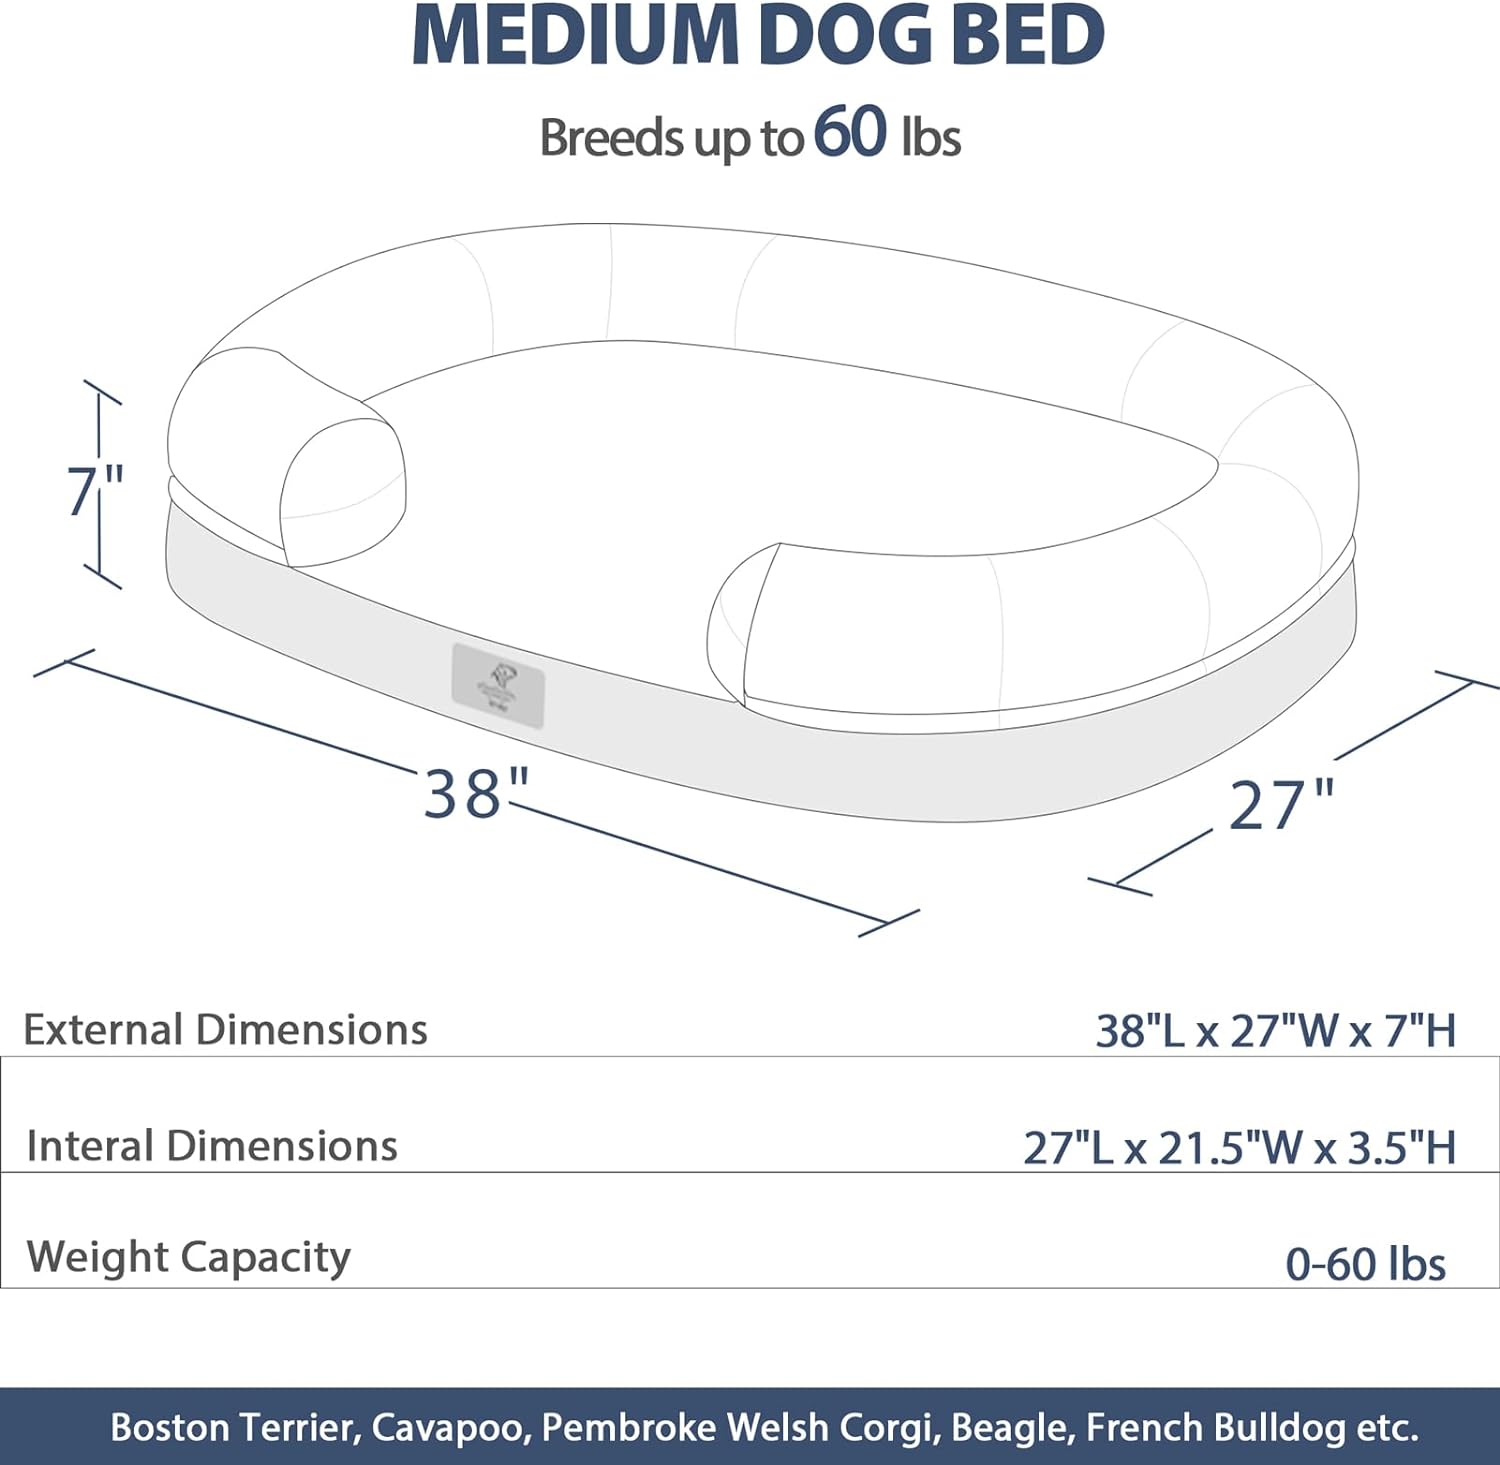 Camas para perros grandes, cama lavable para perros con funda extraíble, cama